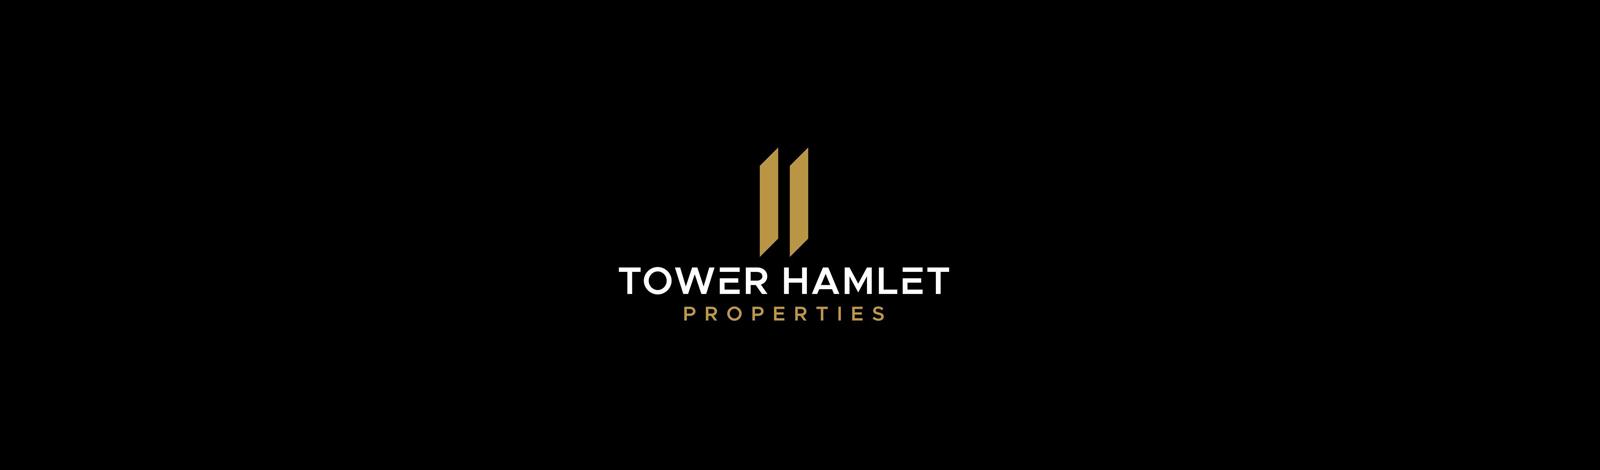 Tower Hamlet Properties Ltd banner